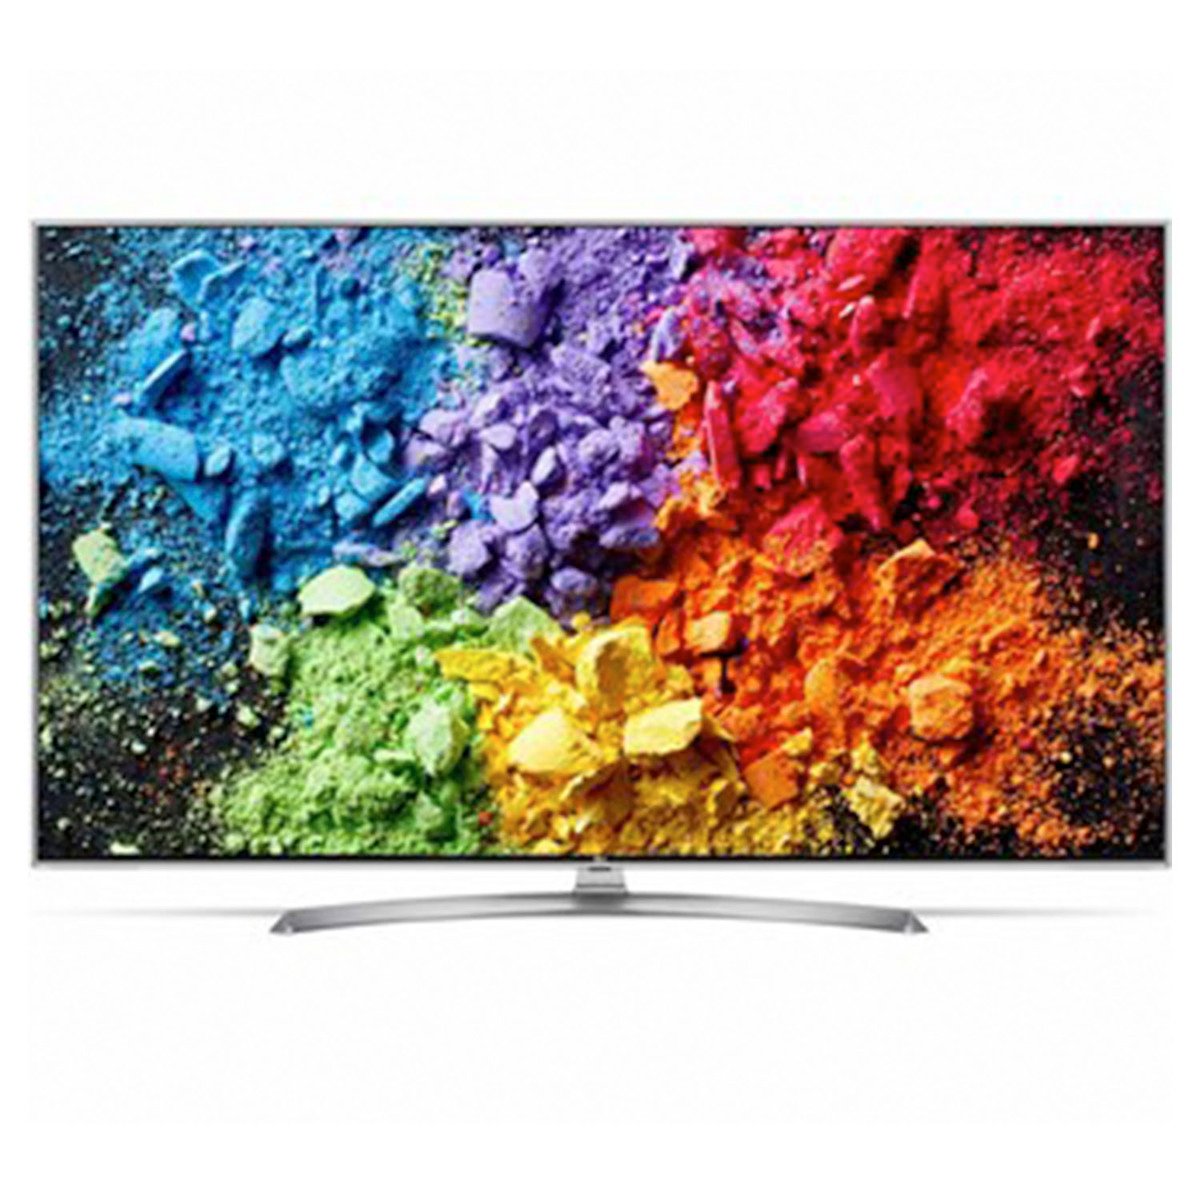 LG Super Ultra HD Smart LED TV 49SK7900PVB 49inch